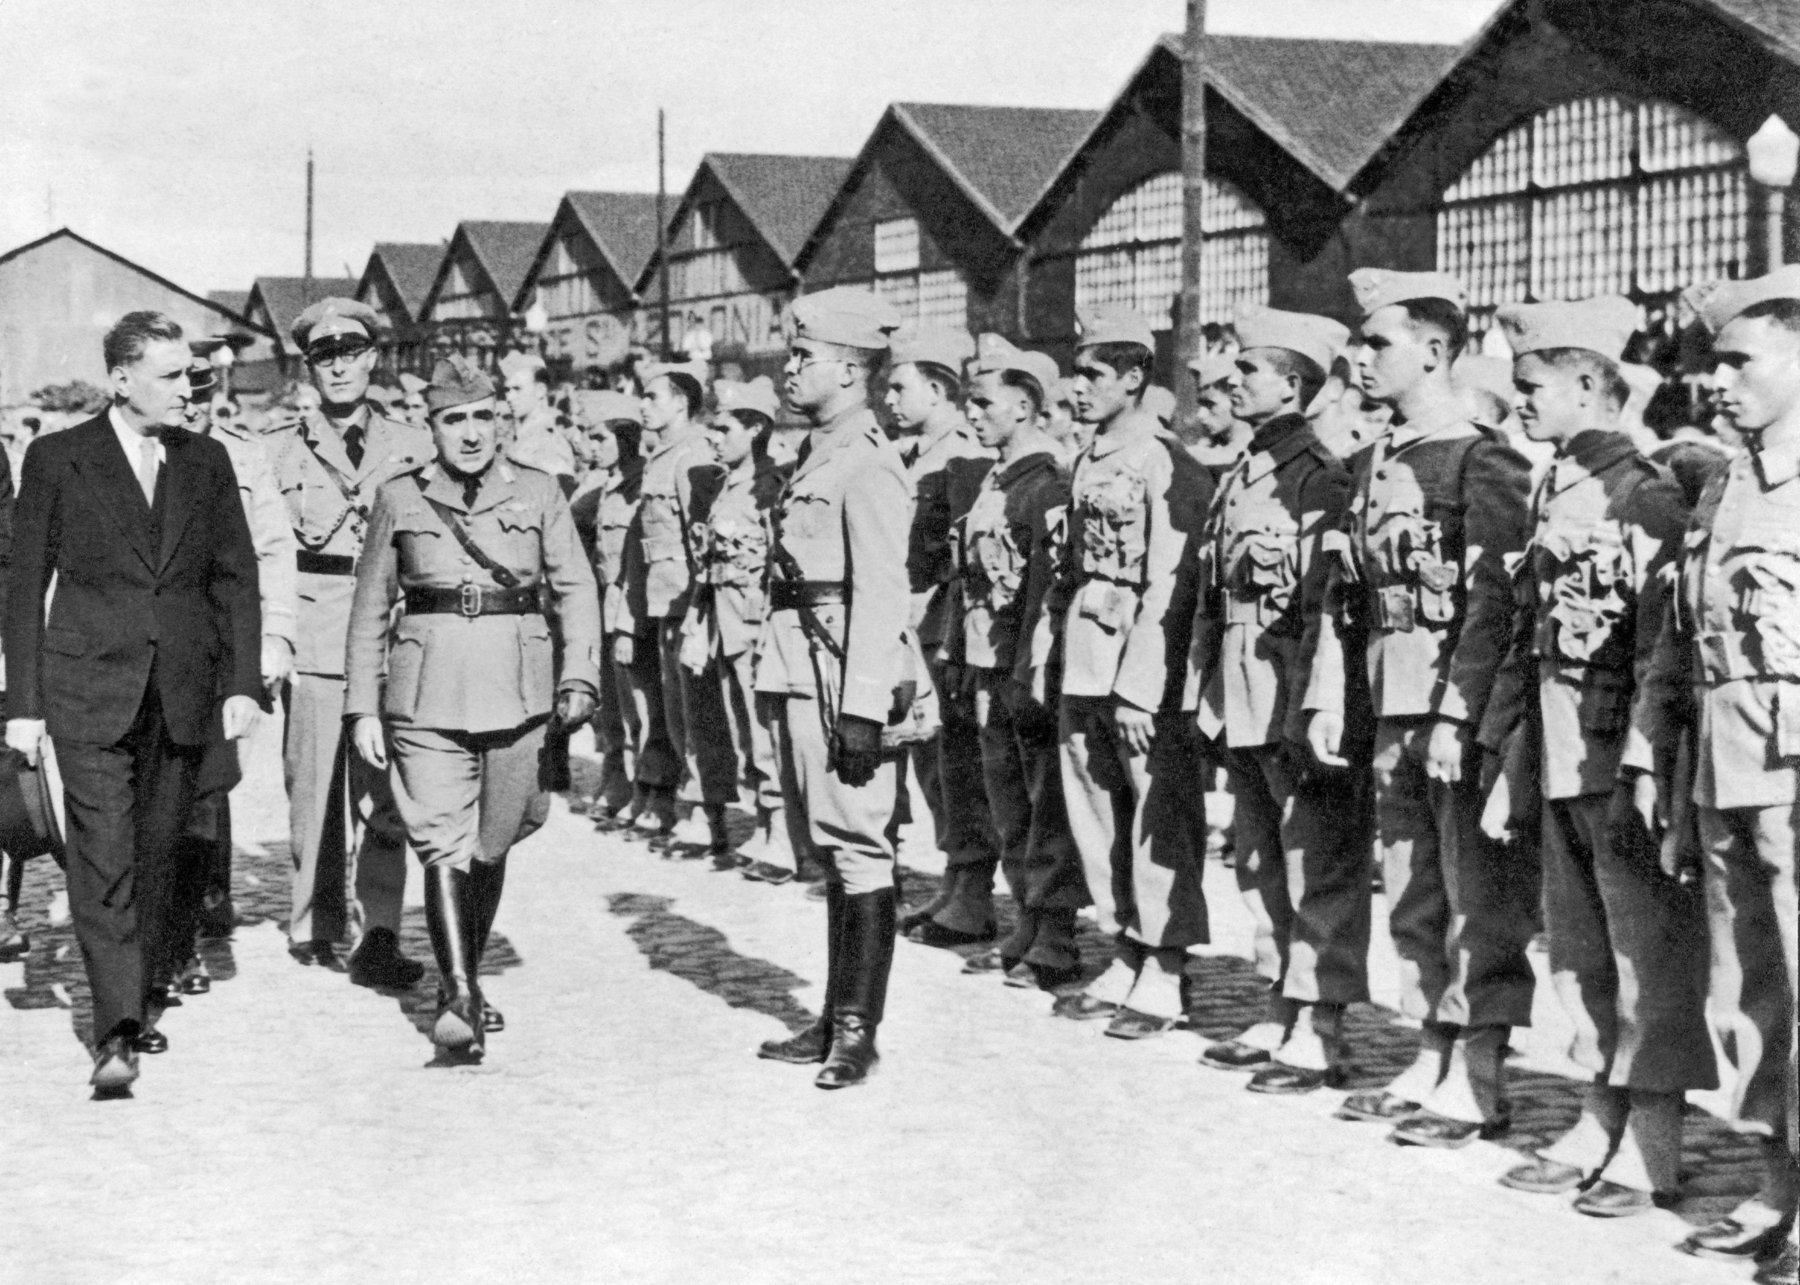 Fotografia em preto e branco. Destaque para um homem de terno escuro, à esquerda, acompanhado de alguns homens fardados, caminhando em frente a uma fileira de soldados. Ao fundo, galpões com tetos triangulares.